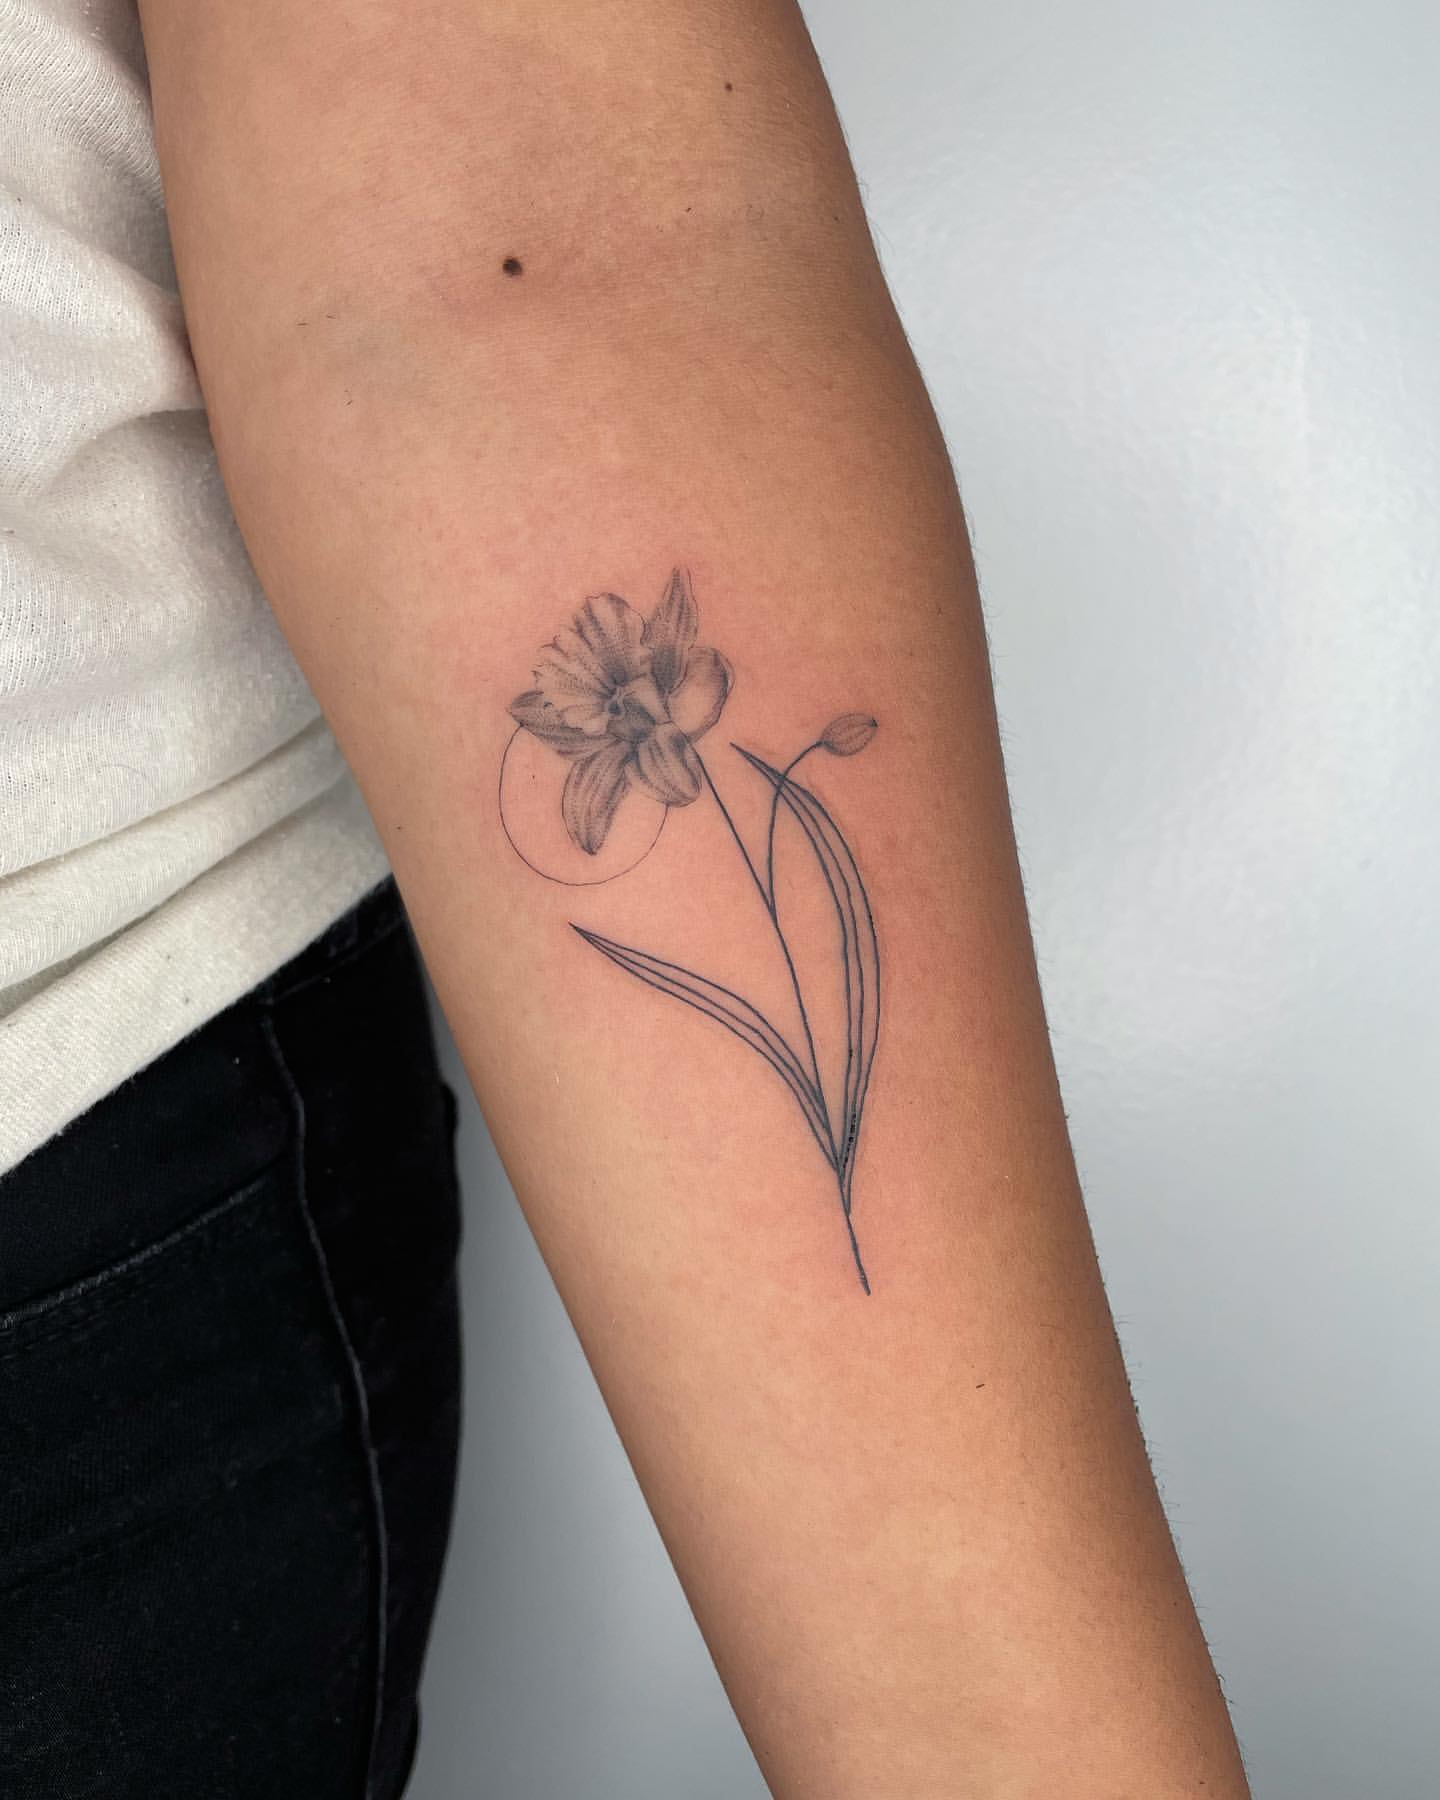 Daffodil Tattoo Ideas 10